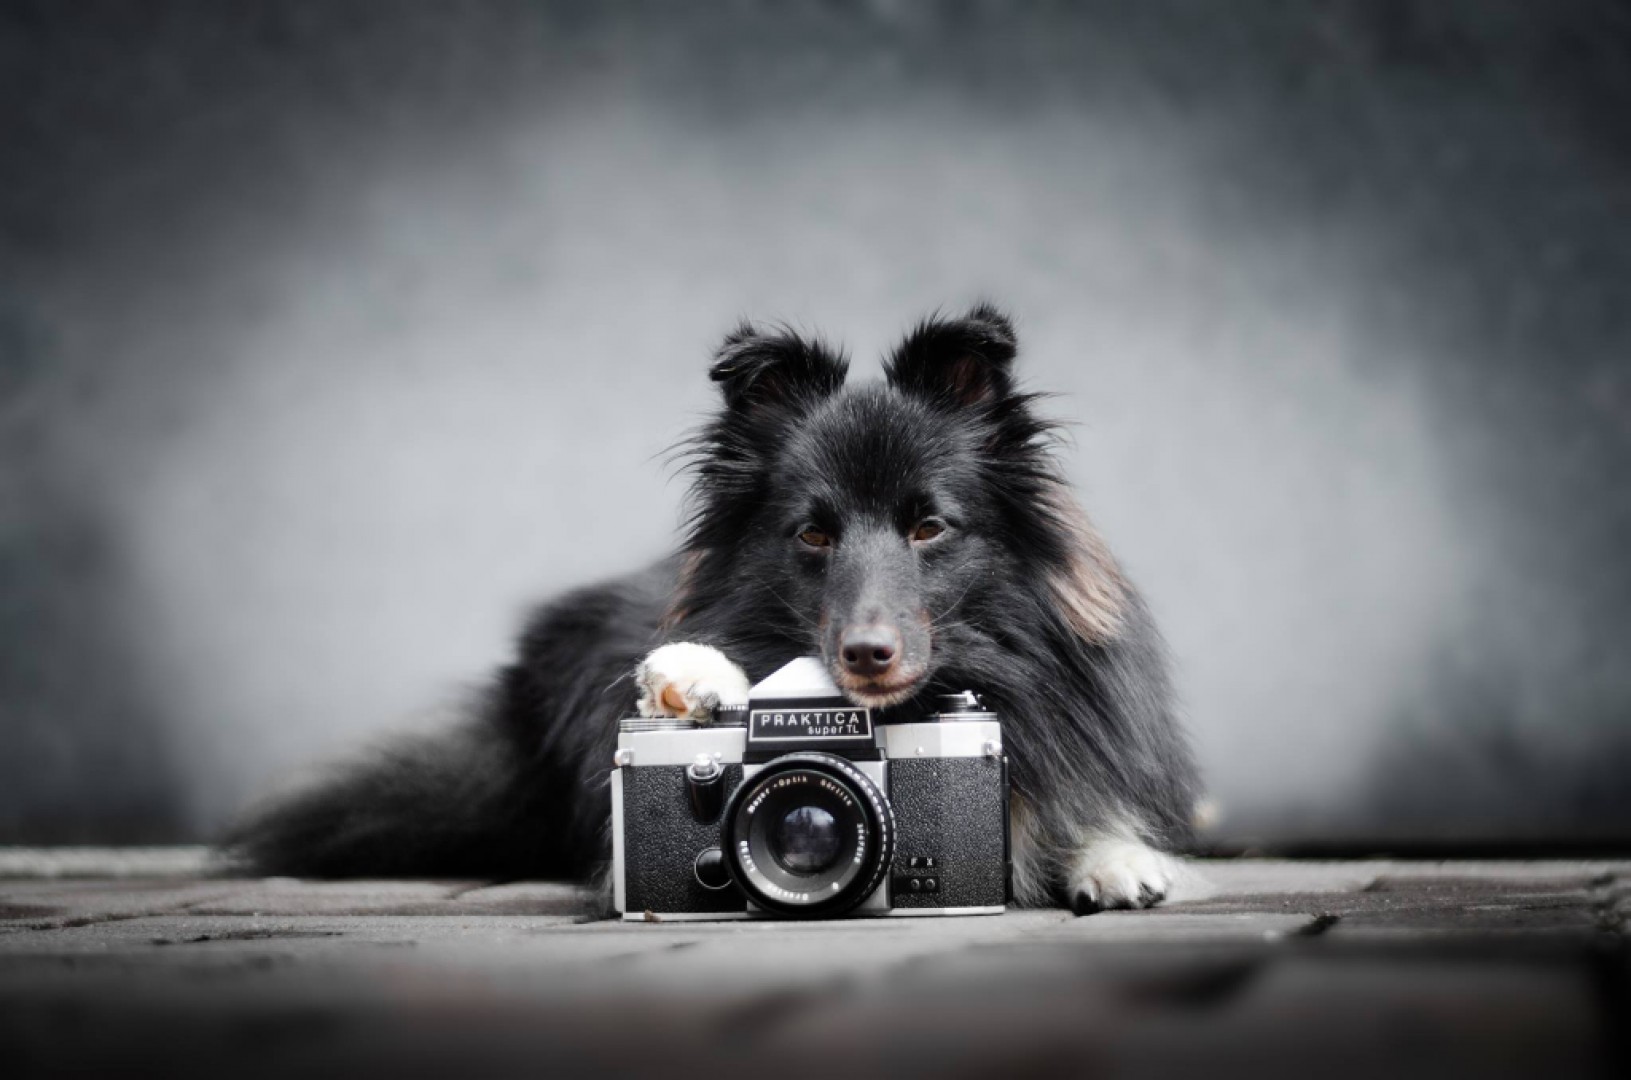 Fotografovanie psov -  je to dôležité?